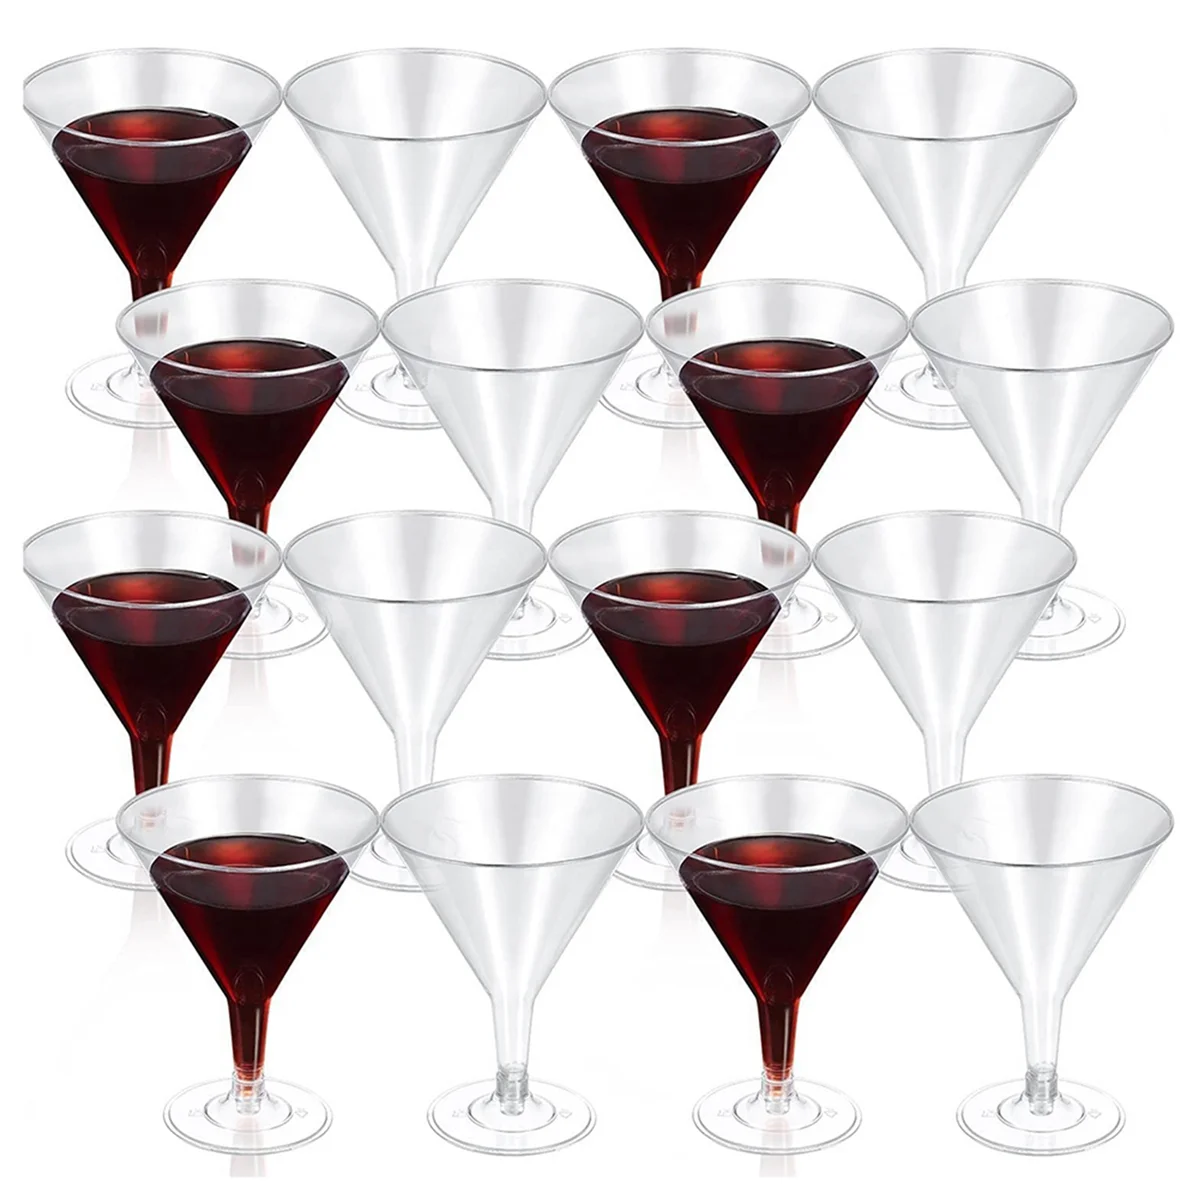 72x не пластик Мартини бокалы, прозрачные бокалы партия многоразовые чашки десертные чашки для коктейля десерт с шампанским 1